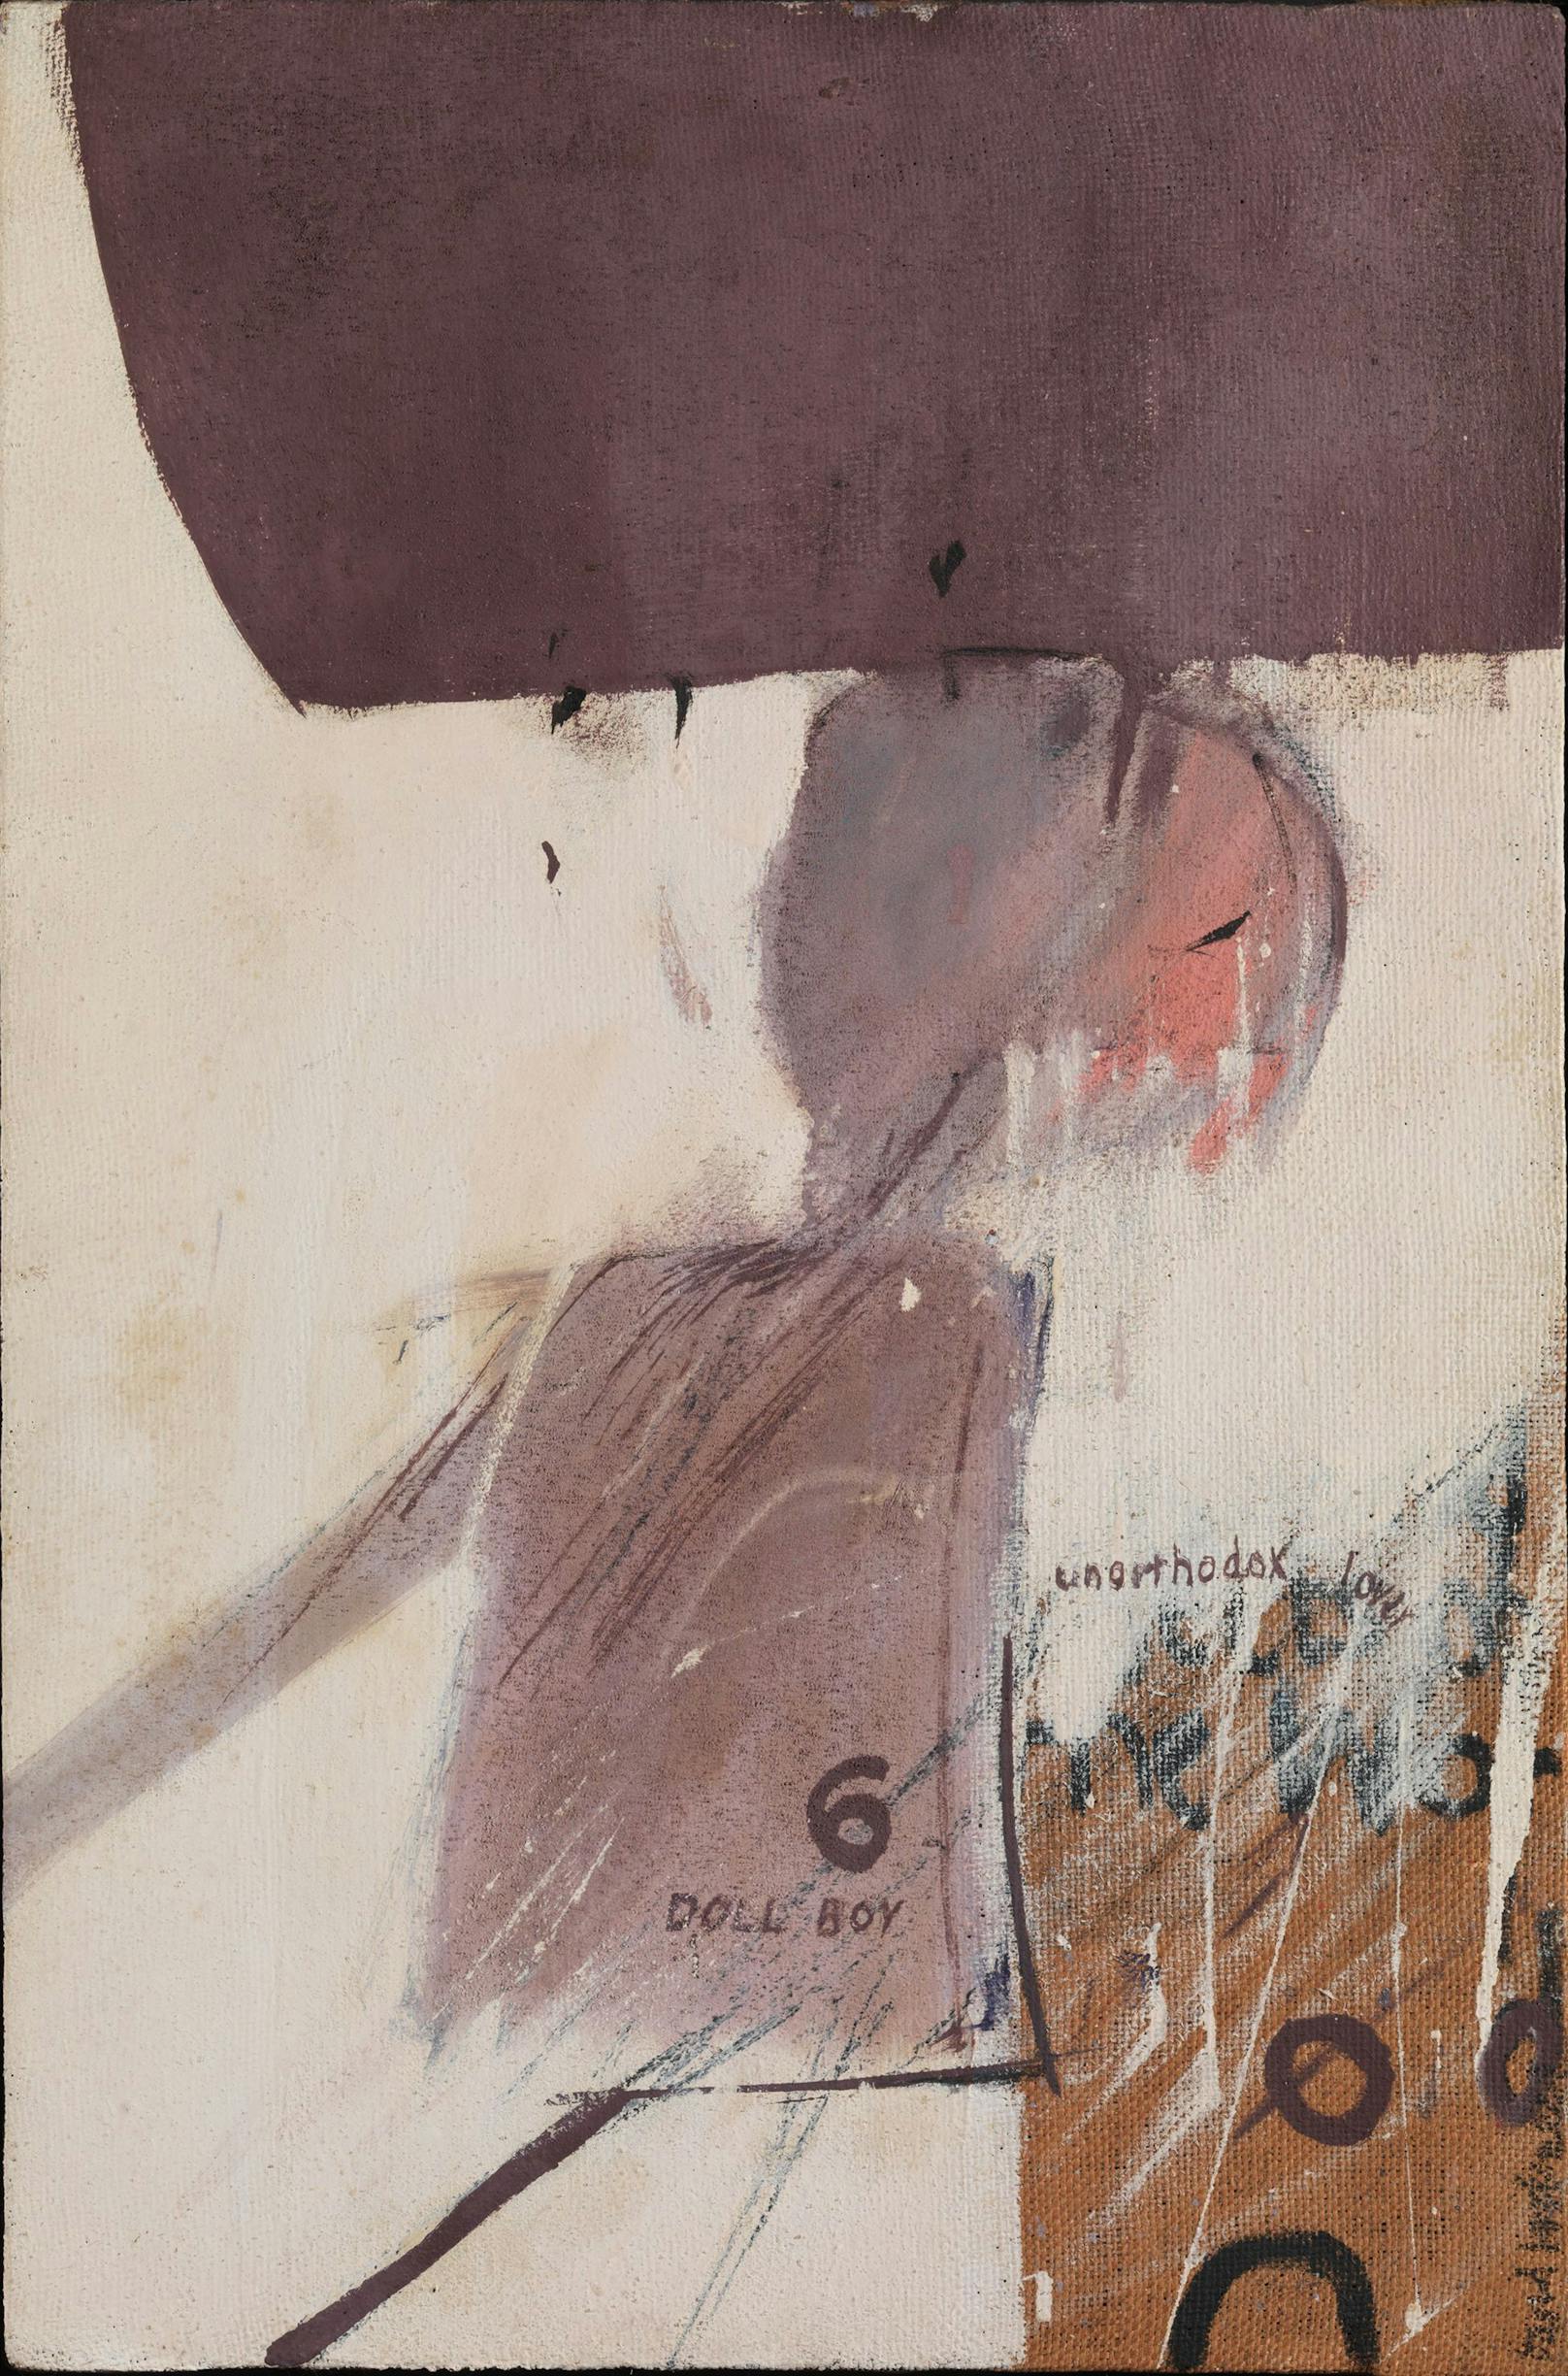 David Hockney, Study for Doll Boy, 1960, Öl auf Leinwand